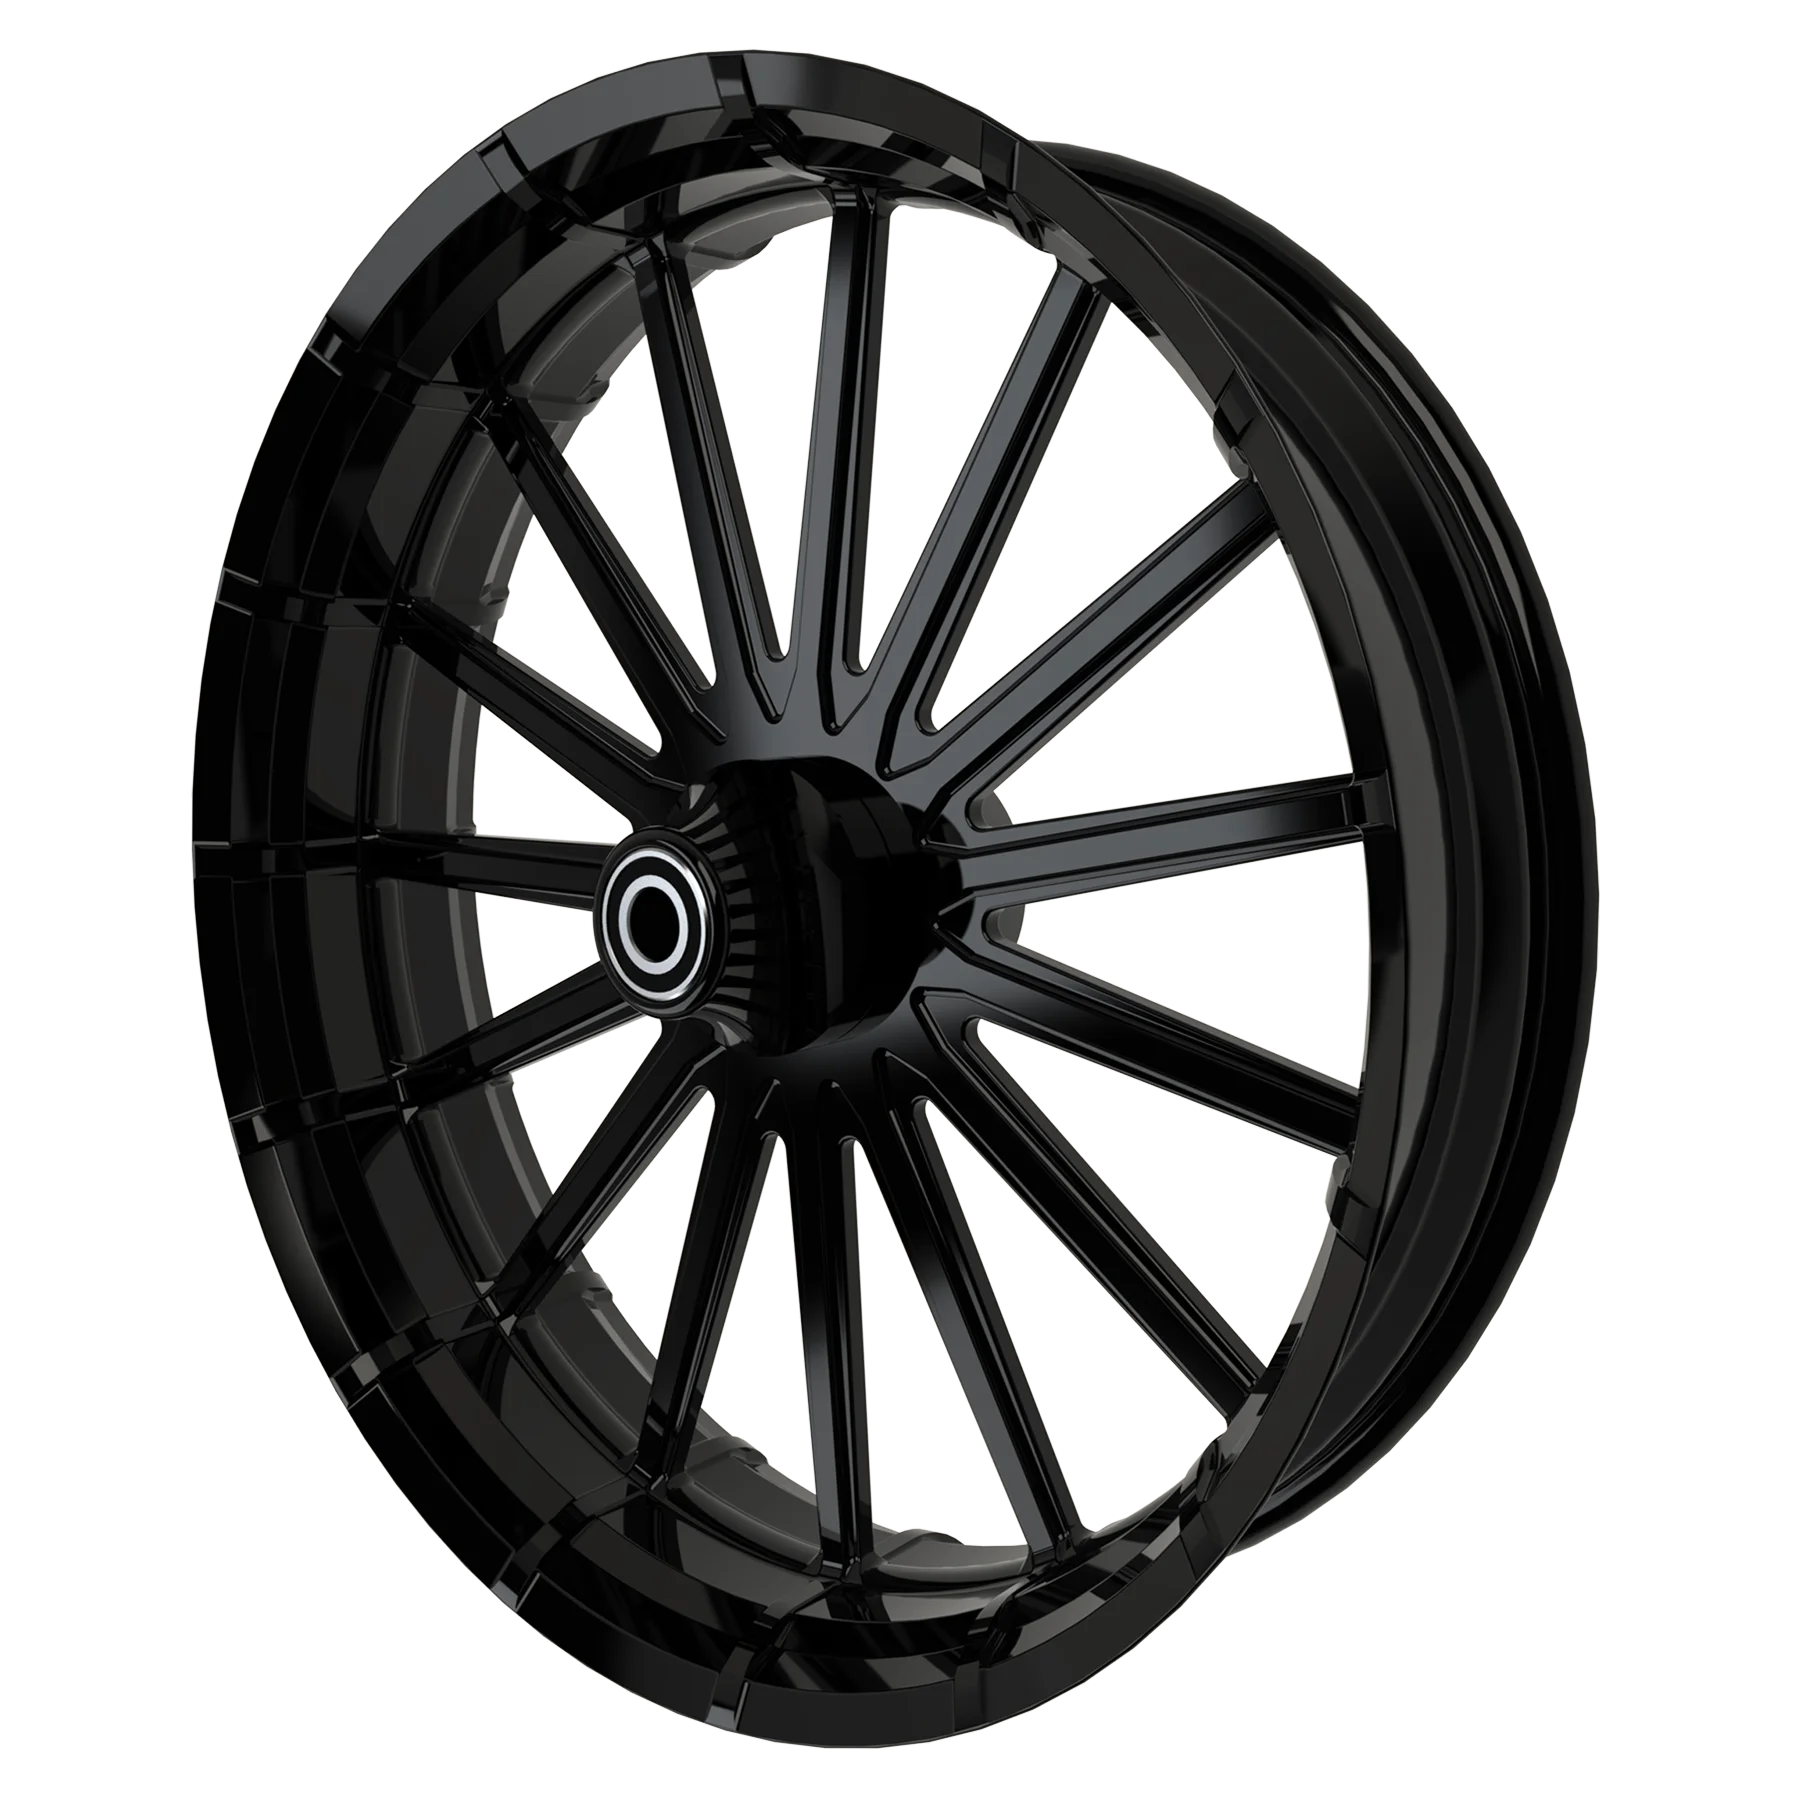 OG-6 custom Bulldog motorcycle wheel in black